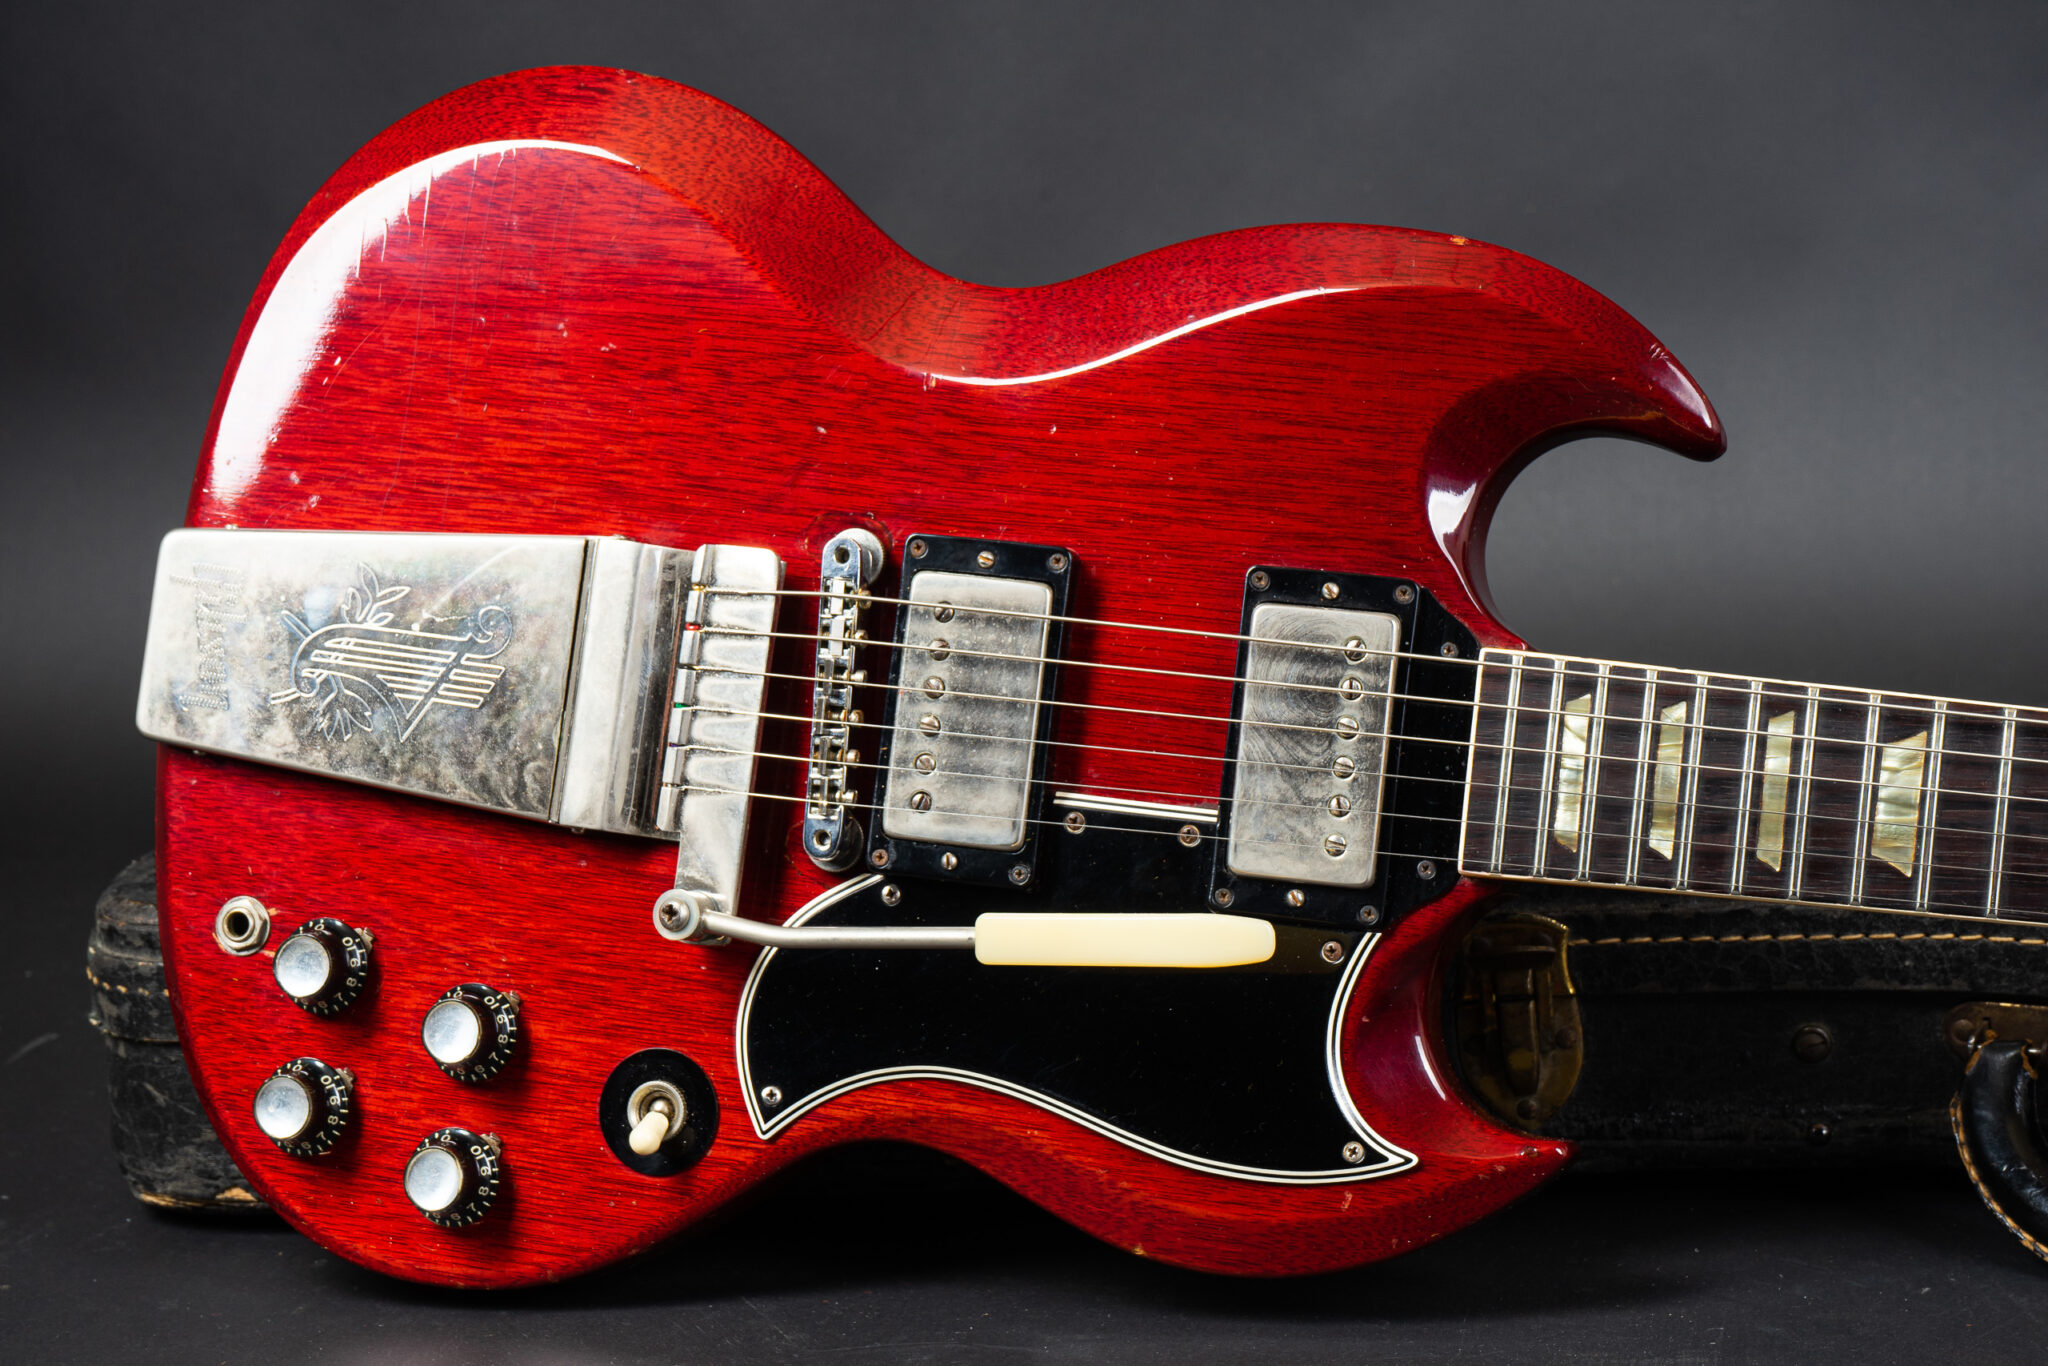 https://guitarpoint.de/app/uploads/products/1965-gibson-sg-standard-cherry-all-64-specs/1965-Gibson-SG-Standard-Cherry-252188-10-2048x1366.jpg